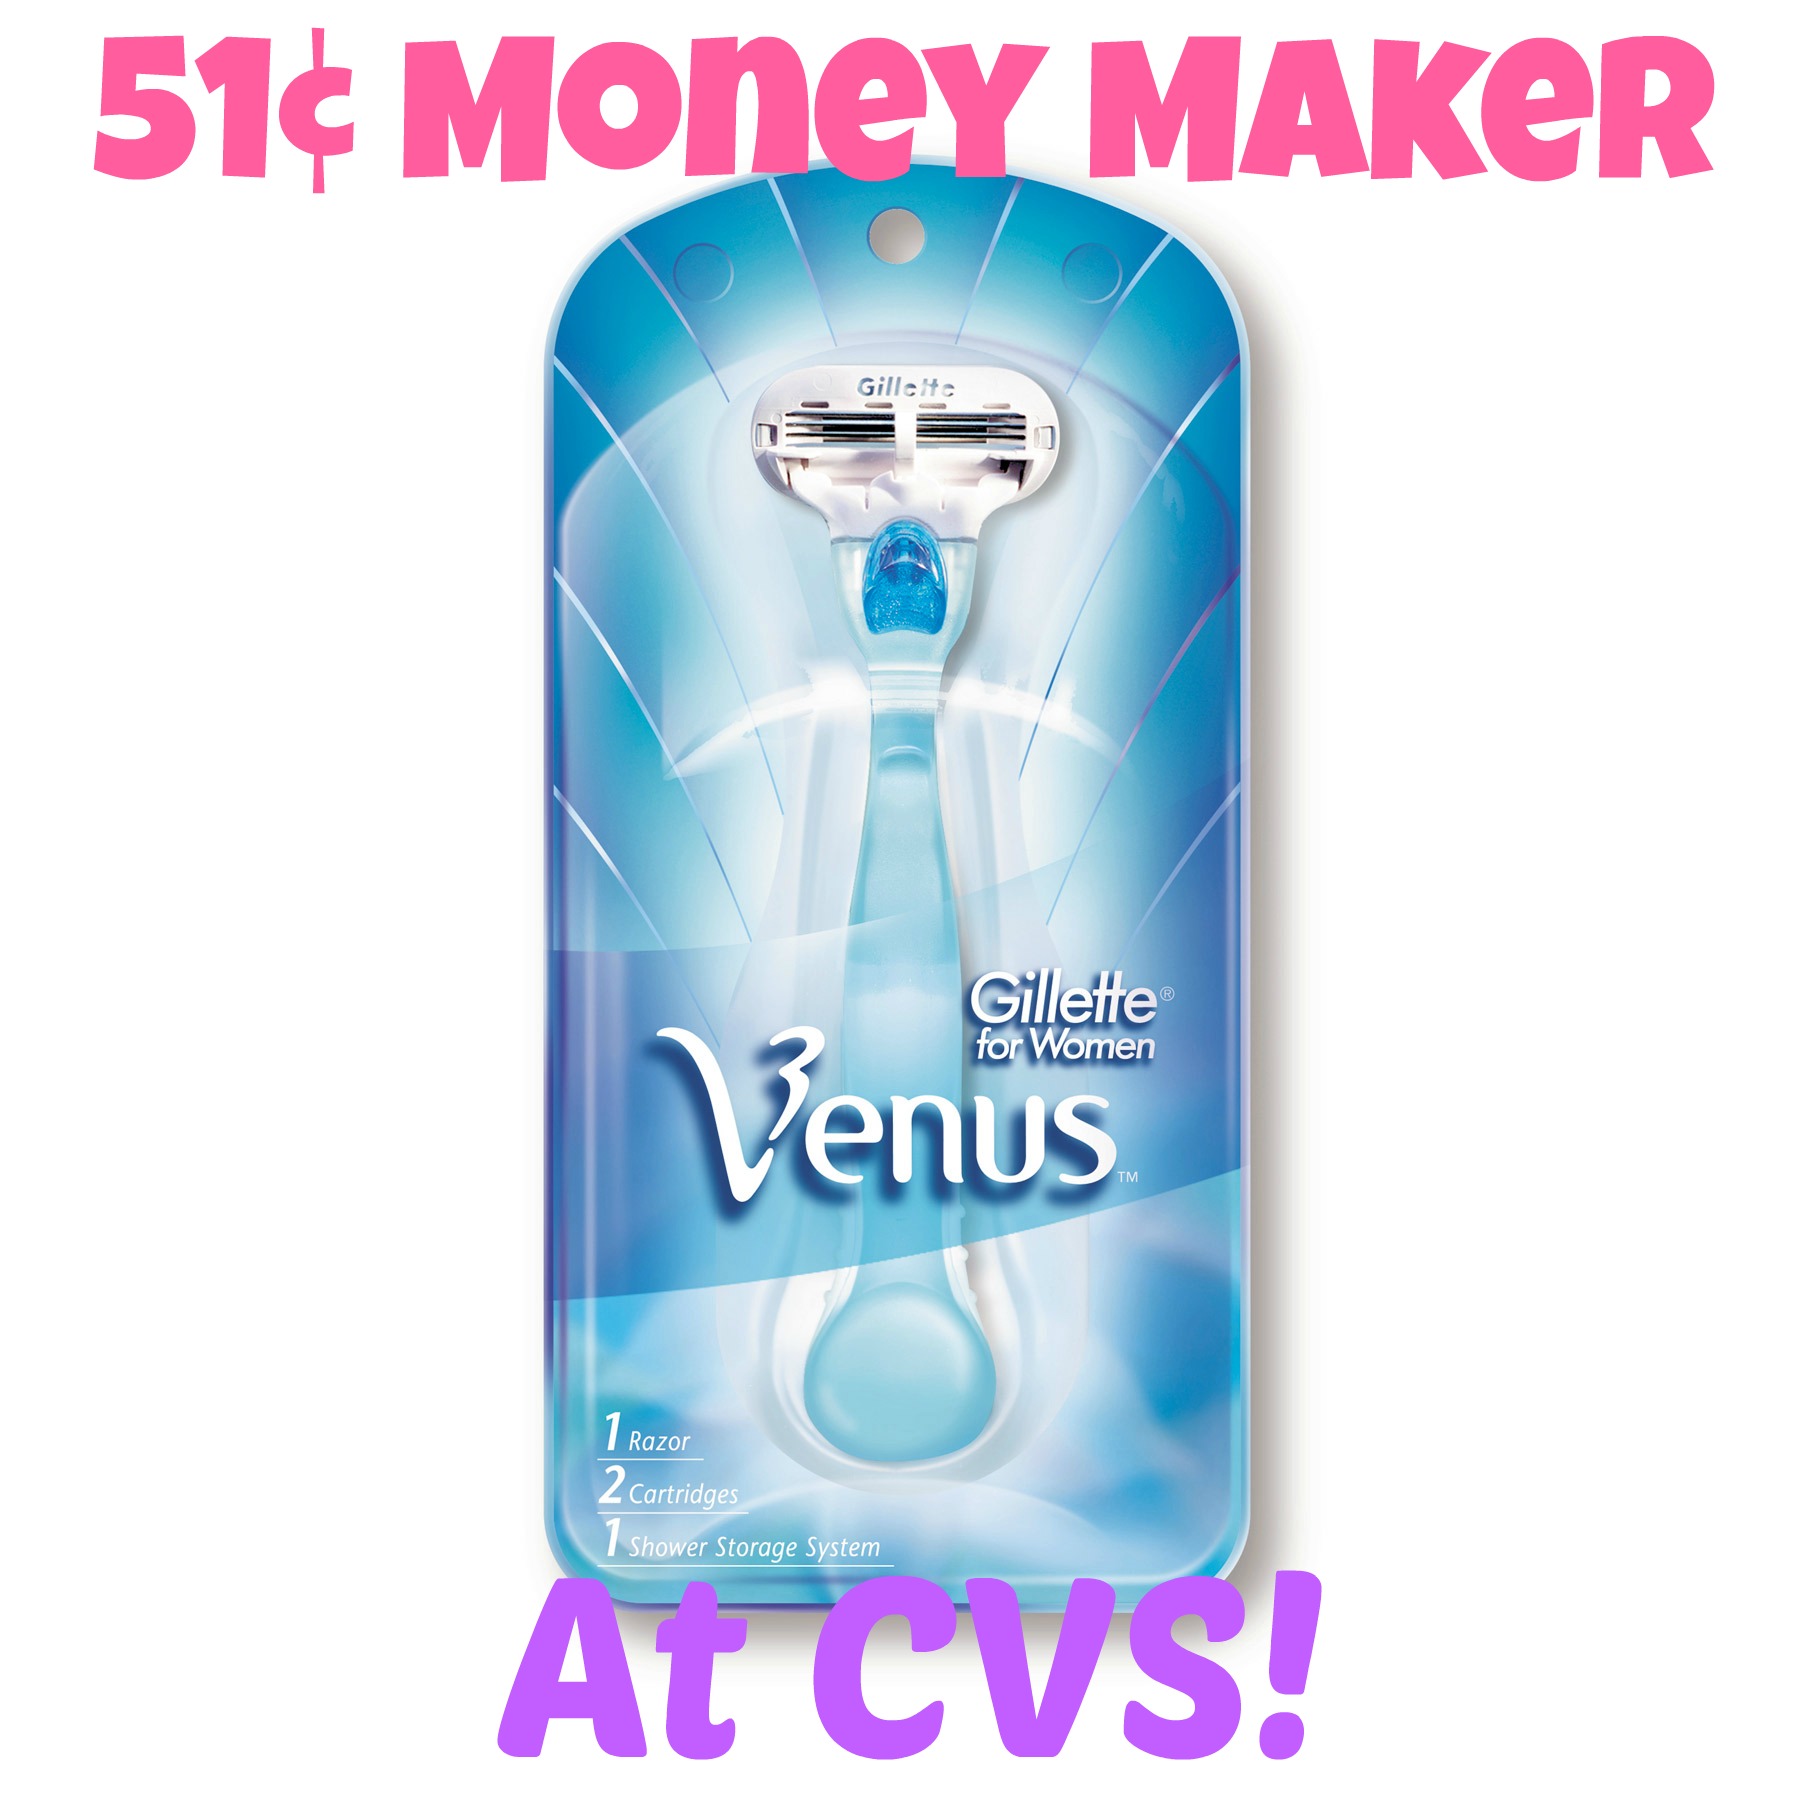 51¢ Money Maker on Gillette Venus Razor at CVS!